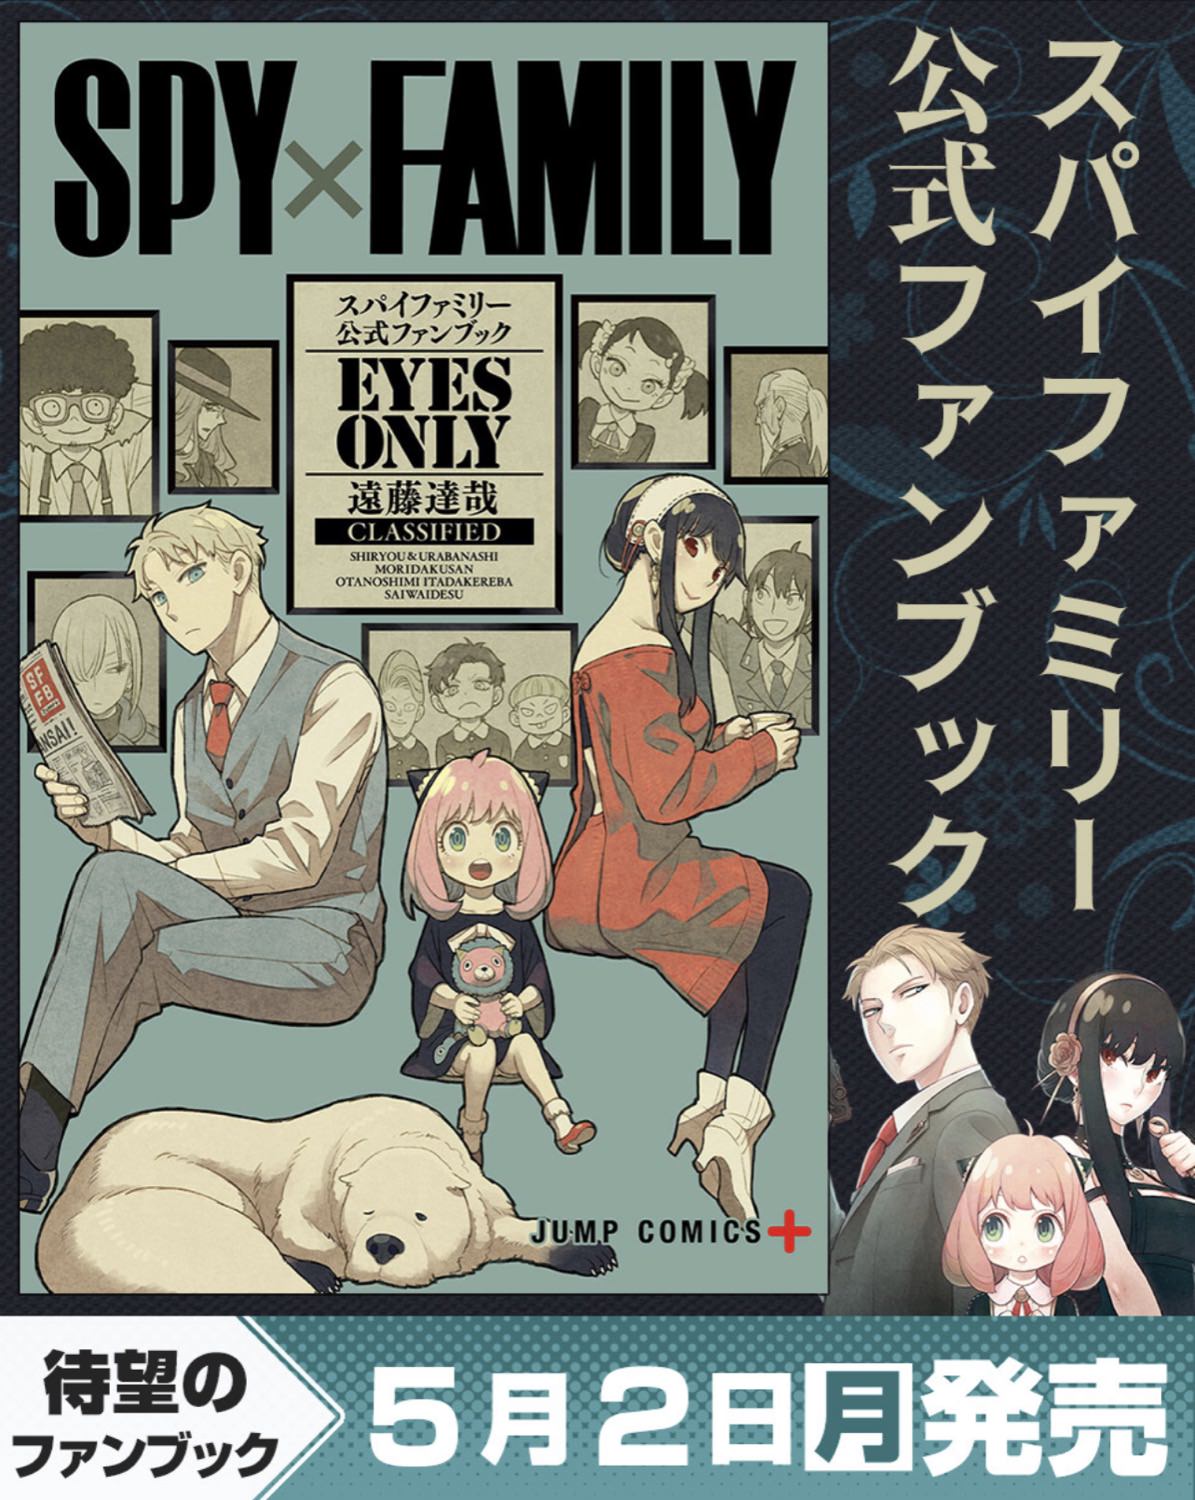 SPY×FAMILY (スパイファミリー) 公式ファンブック 5月2日発売!